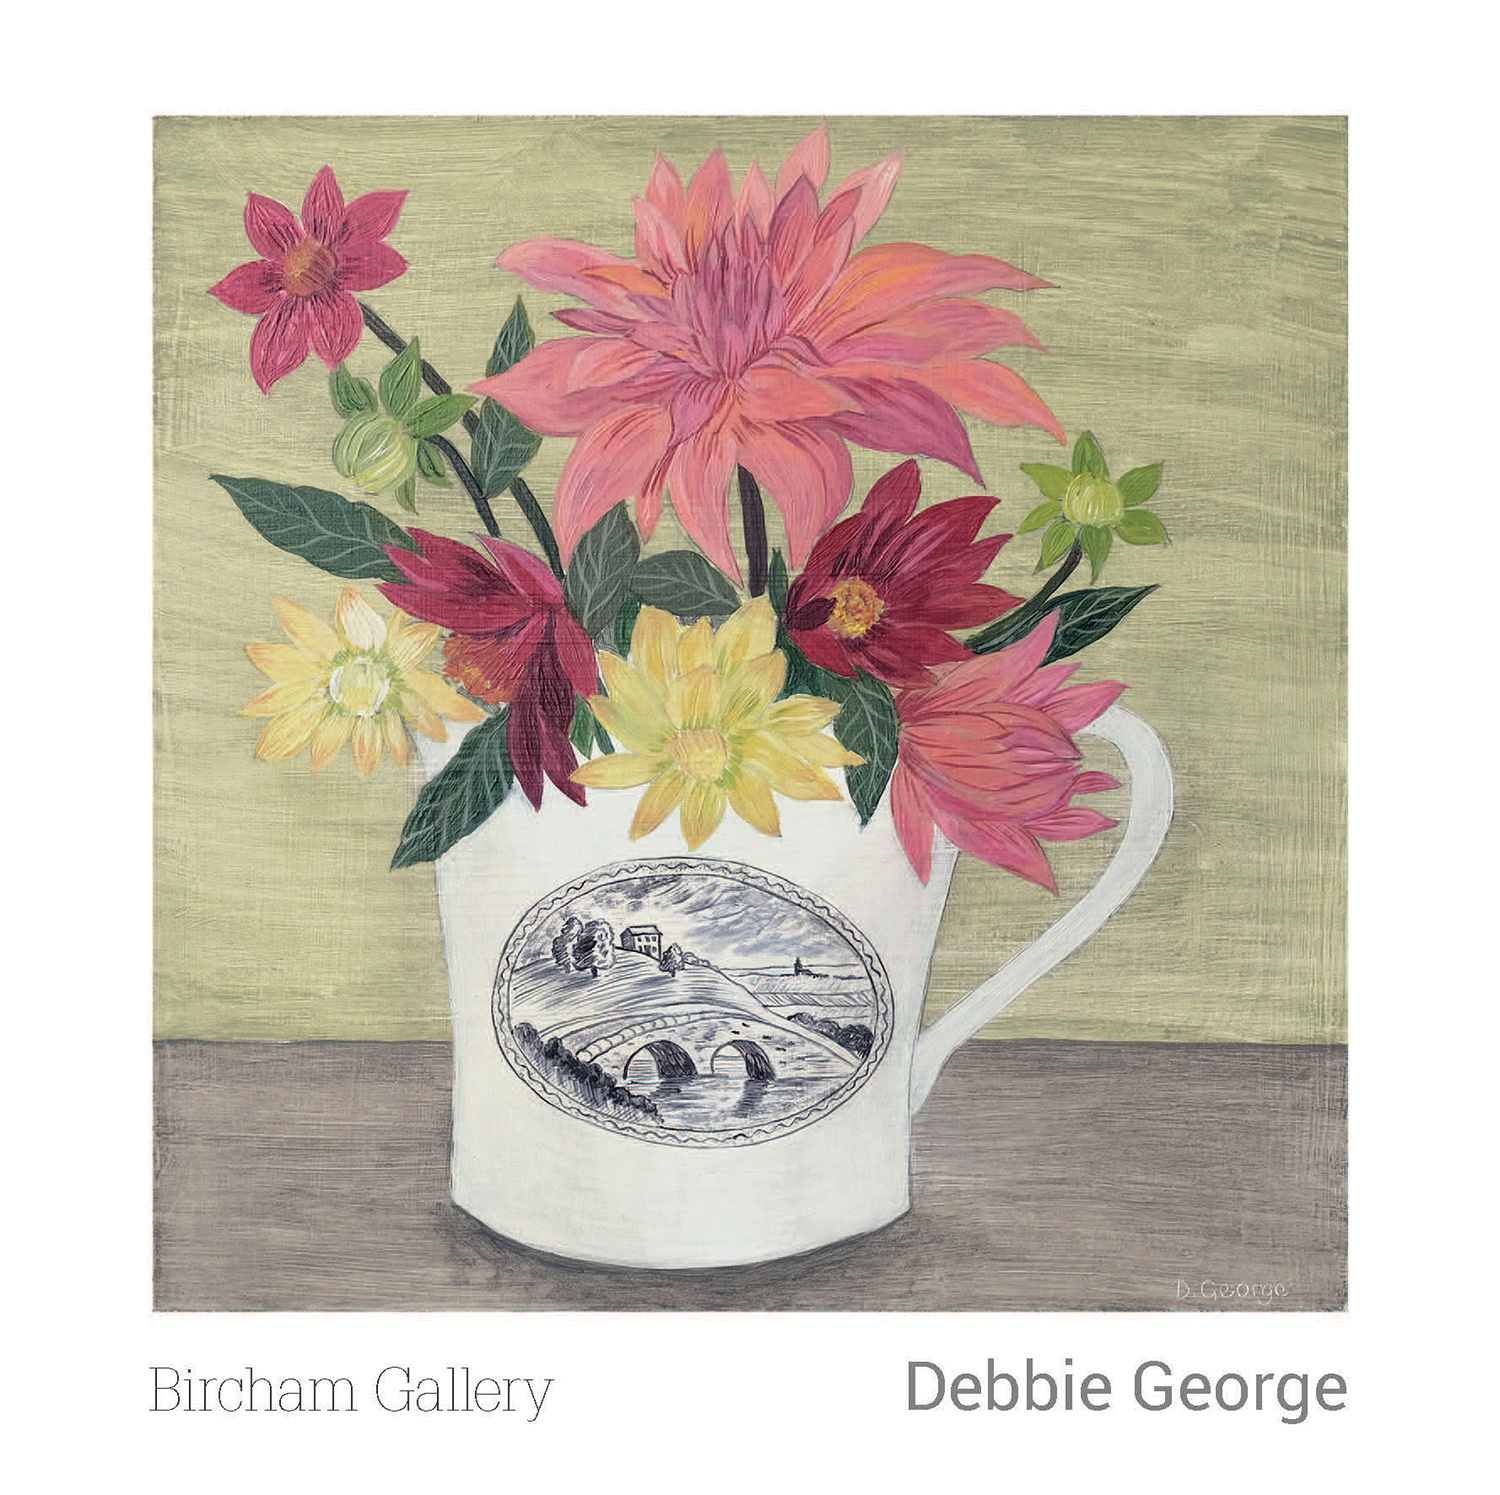 Debbie George Mini Book 2017 by Debbie George